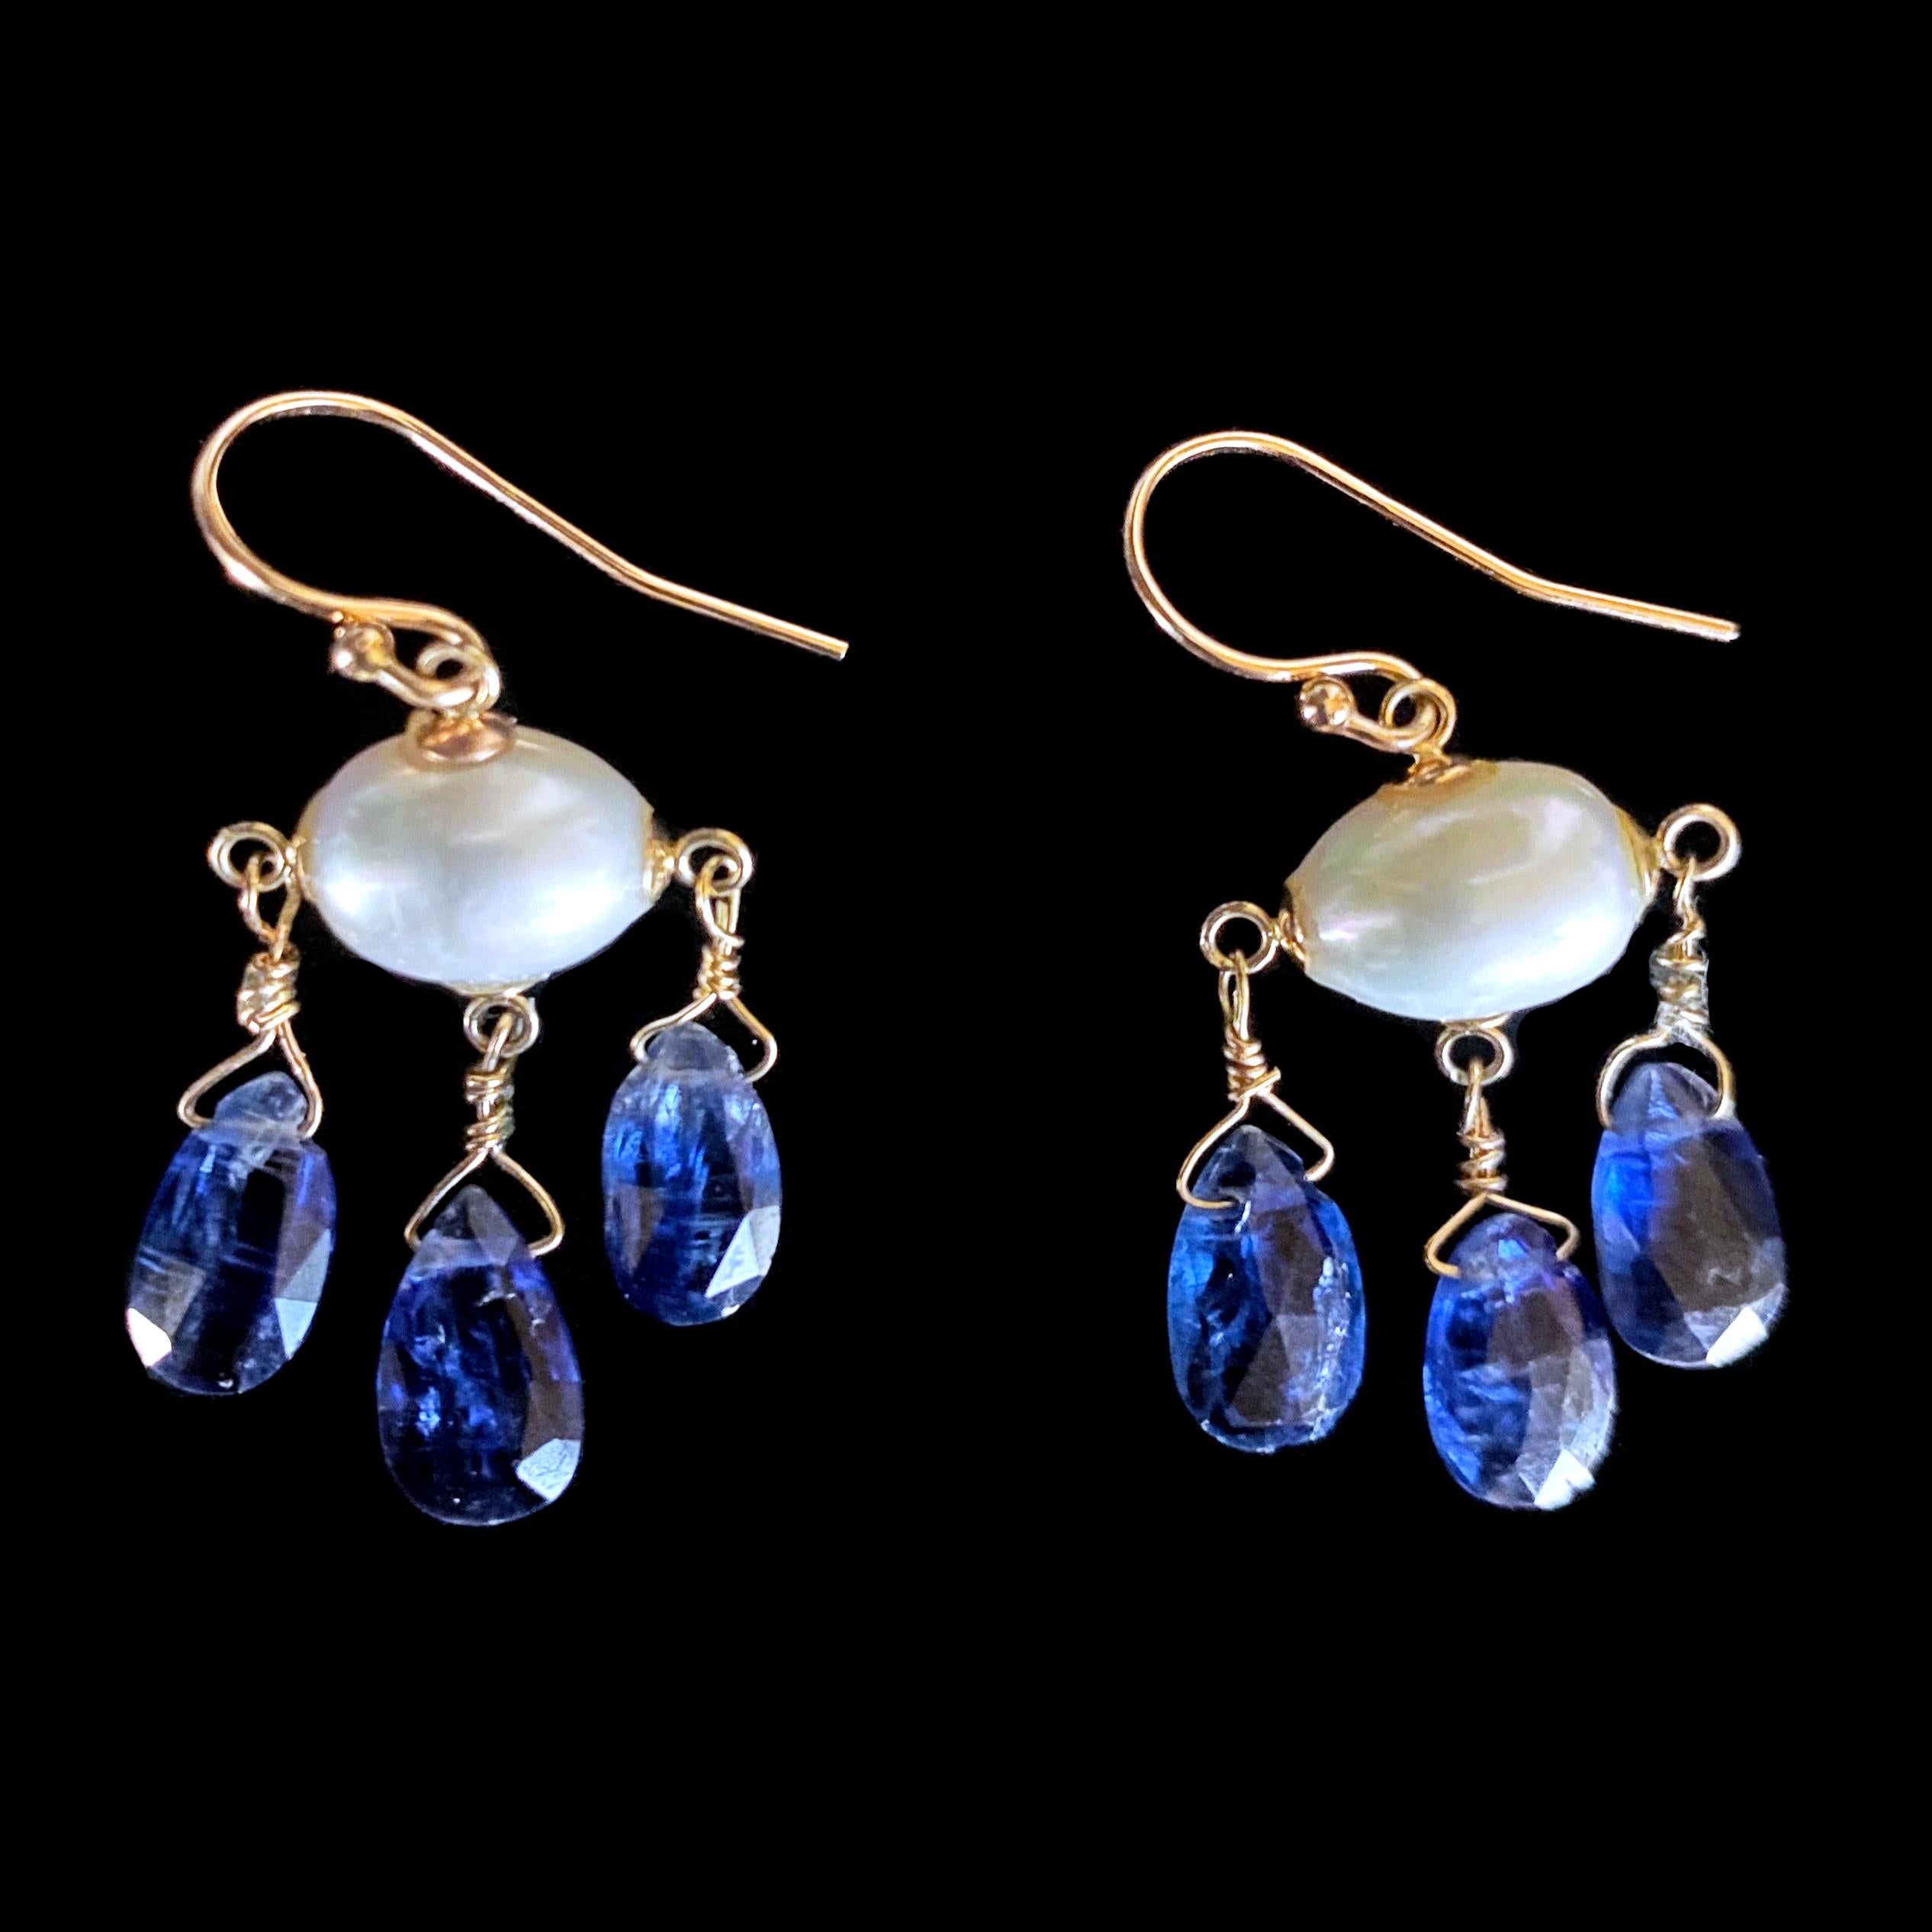 Briolette Cut Marina J. Blue Kyanite, Pearl & Solid 14k Yellow Gold Chandelier Earrings For Sale